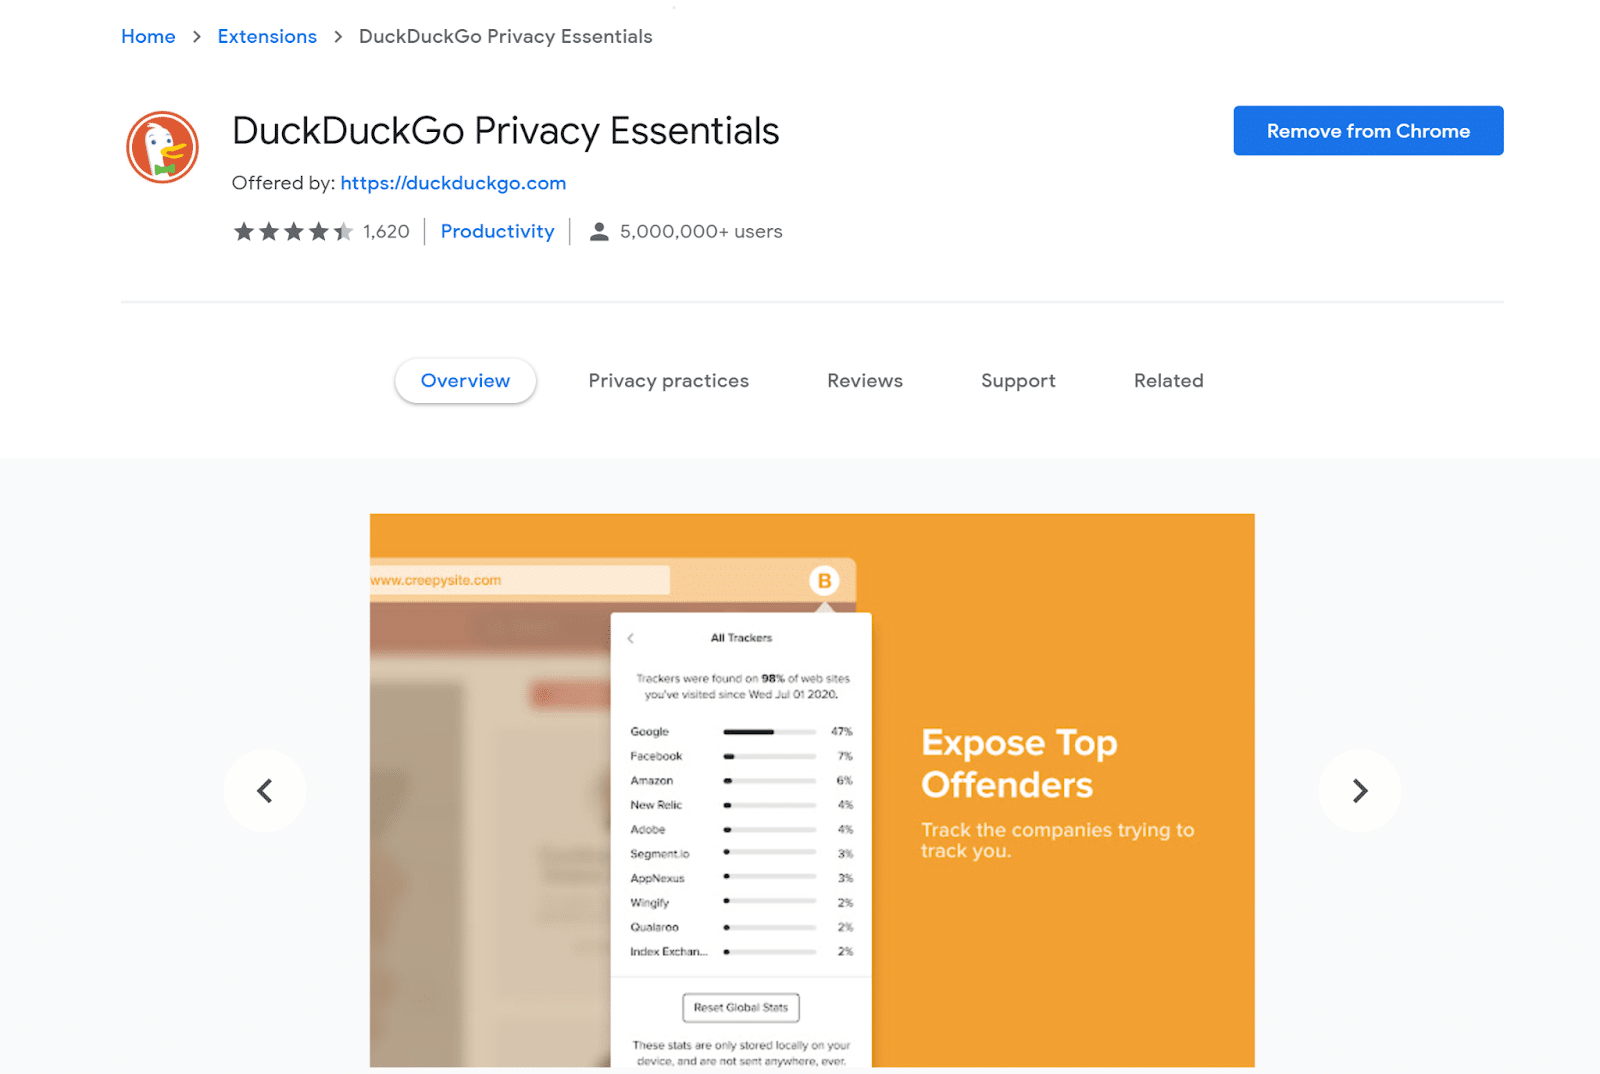 O DuckDuckGo Privacy Essentials é uma característica notável deste mecanismo de pesquisa.